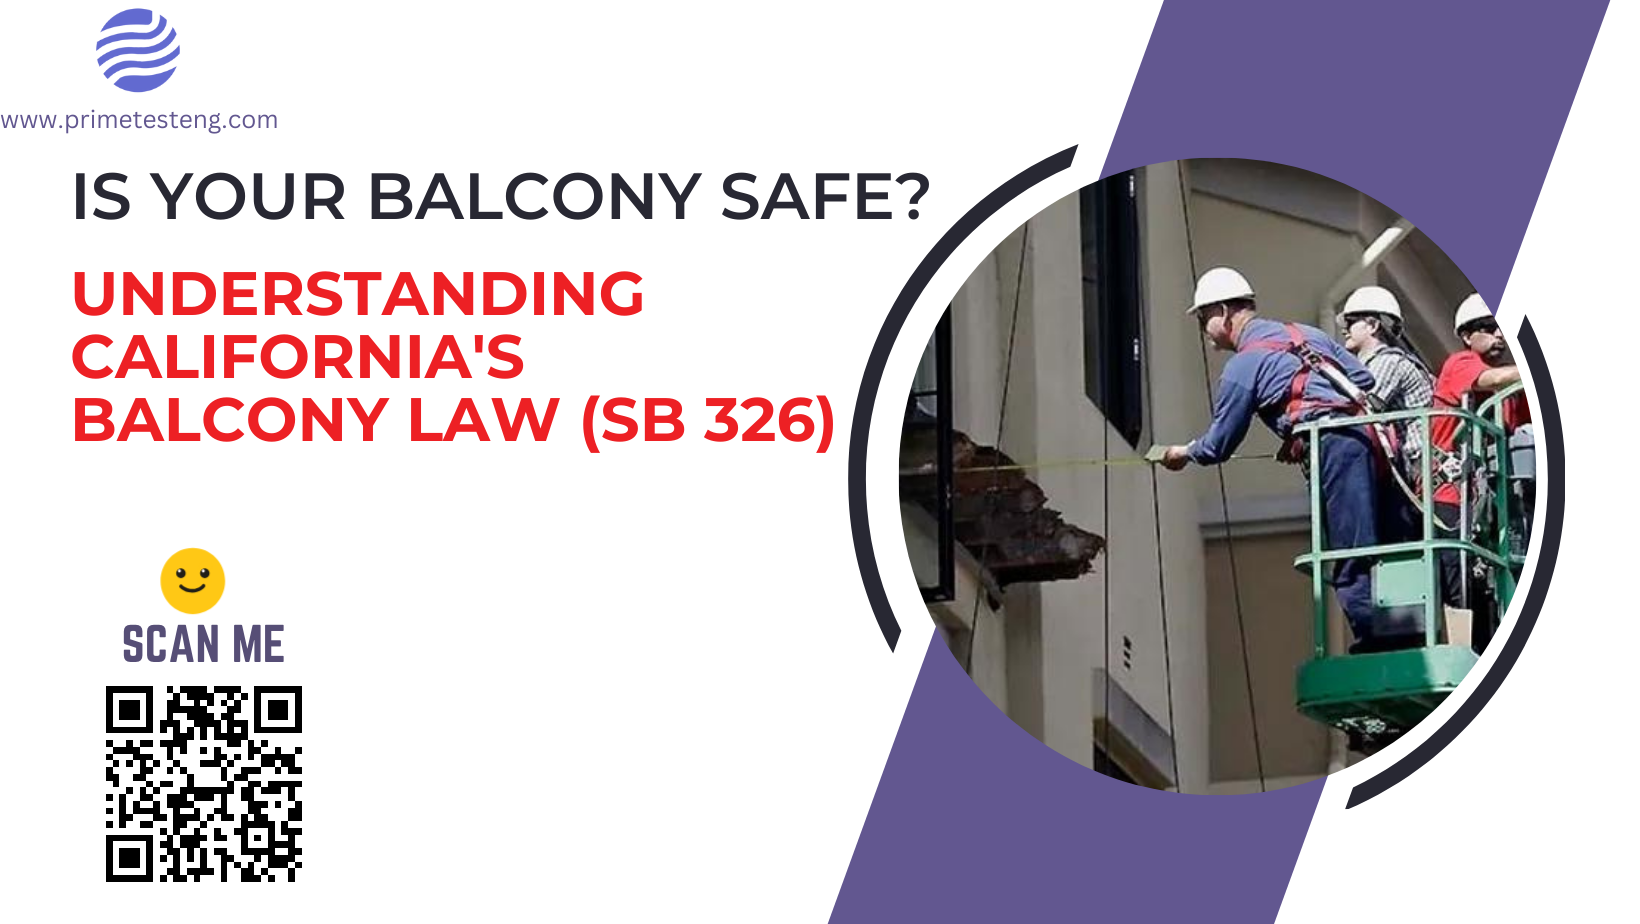 California's Balcony Law (SB 326)